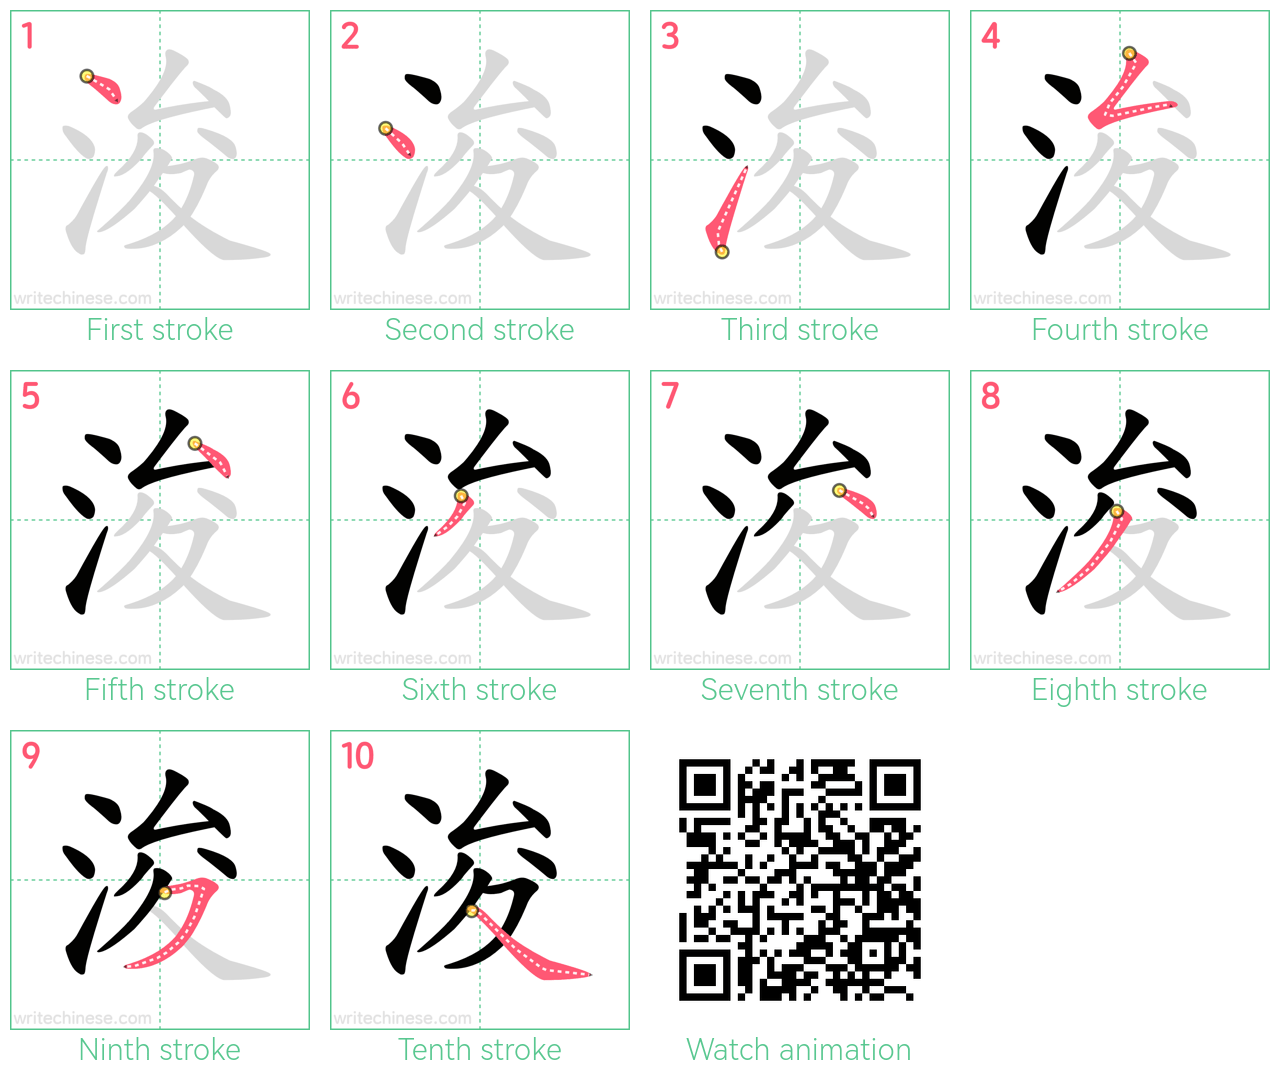 浚 step-by-step stroke order diagrams